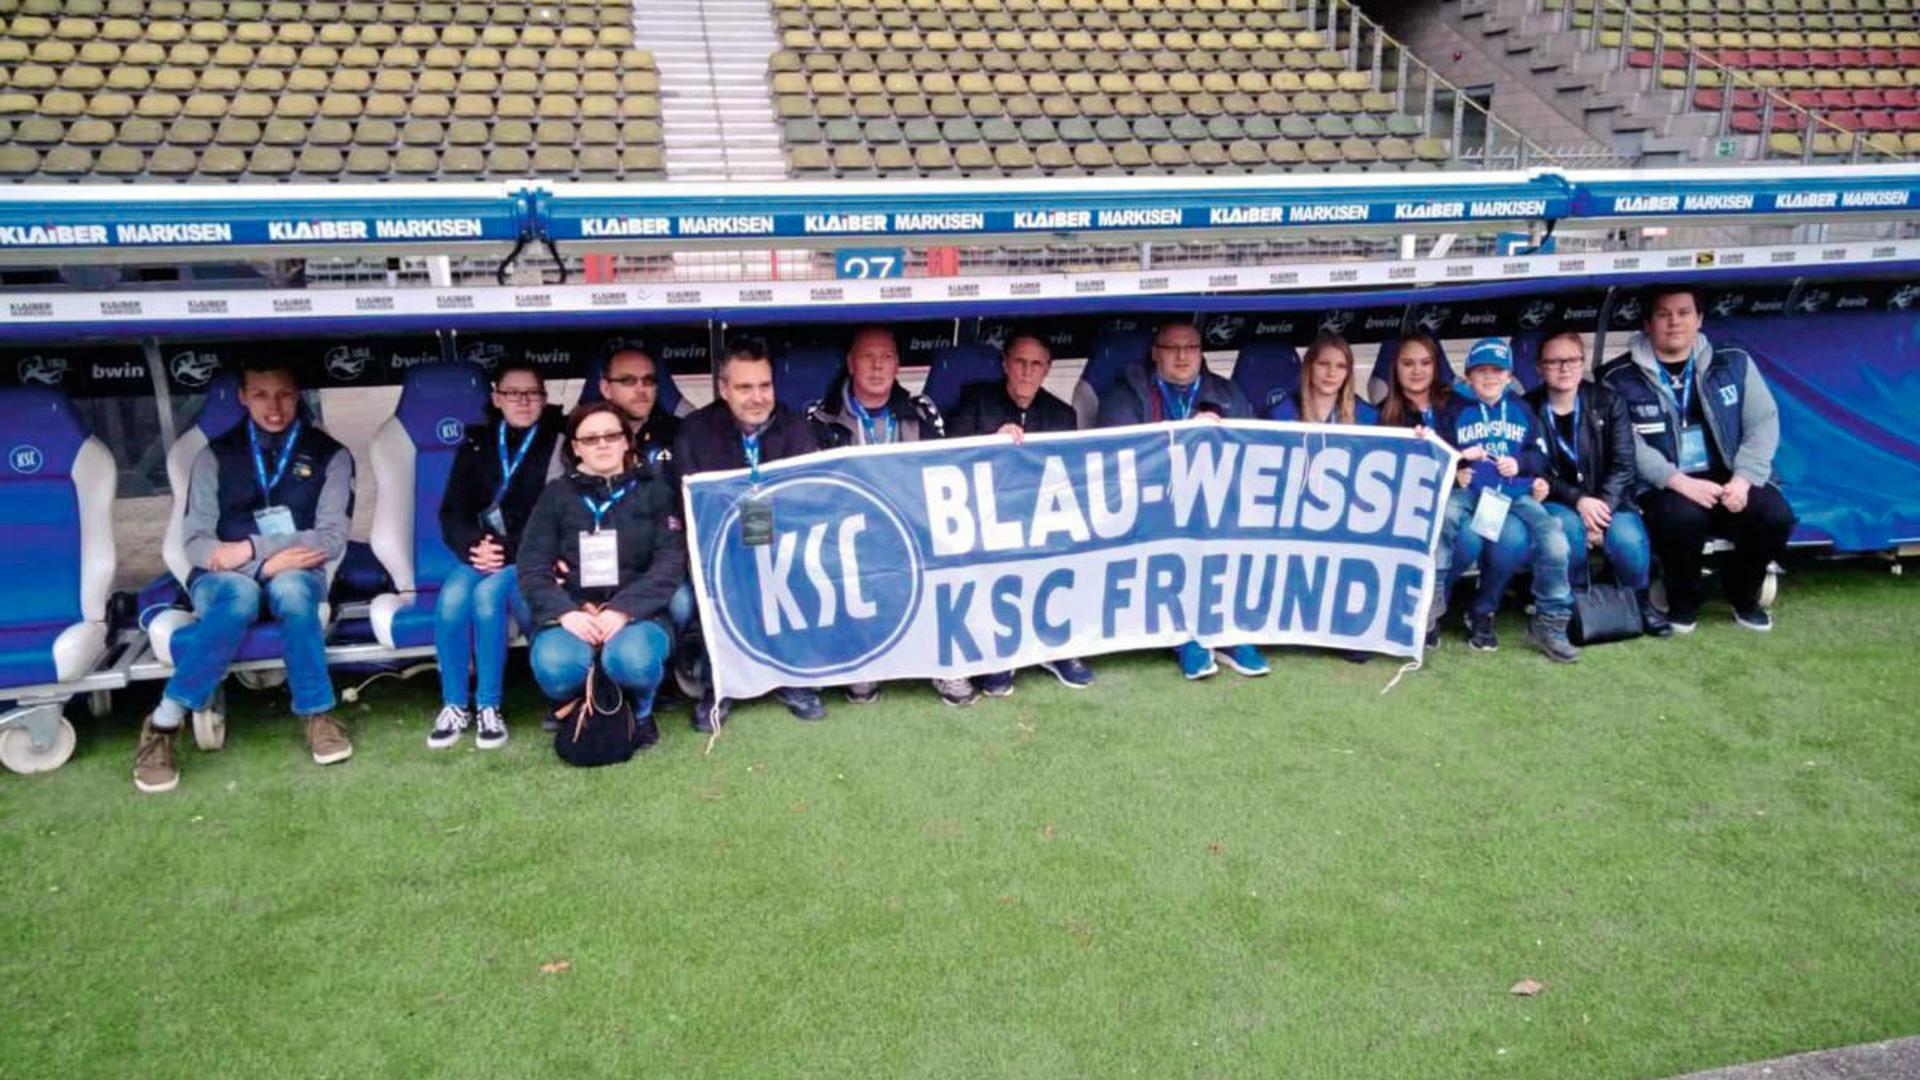 Der KSC-Fanclub Blau-weiße KSC-Freunde bei einer Stadionführung mit KSC-Legende Edgar Schmitt.